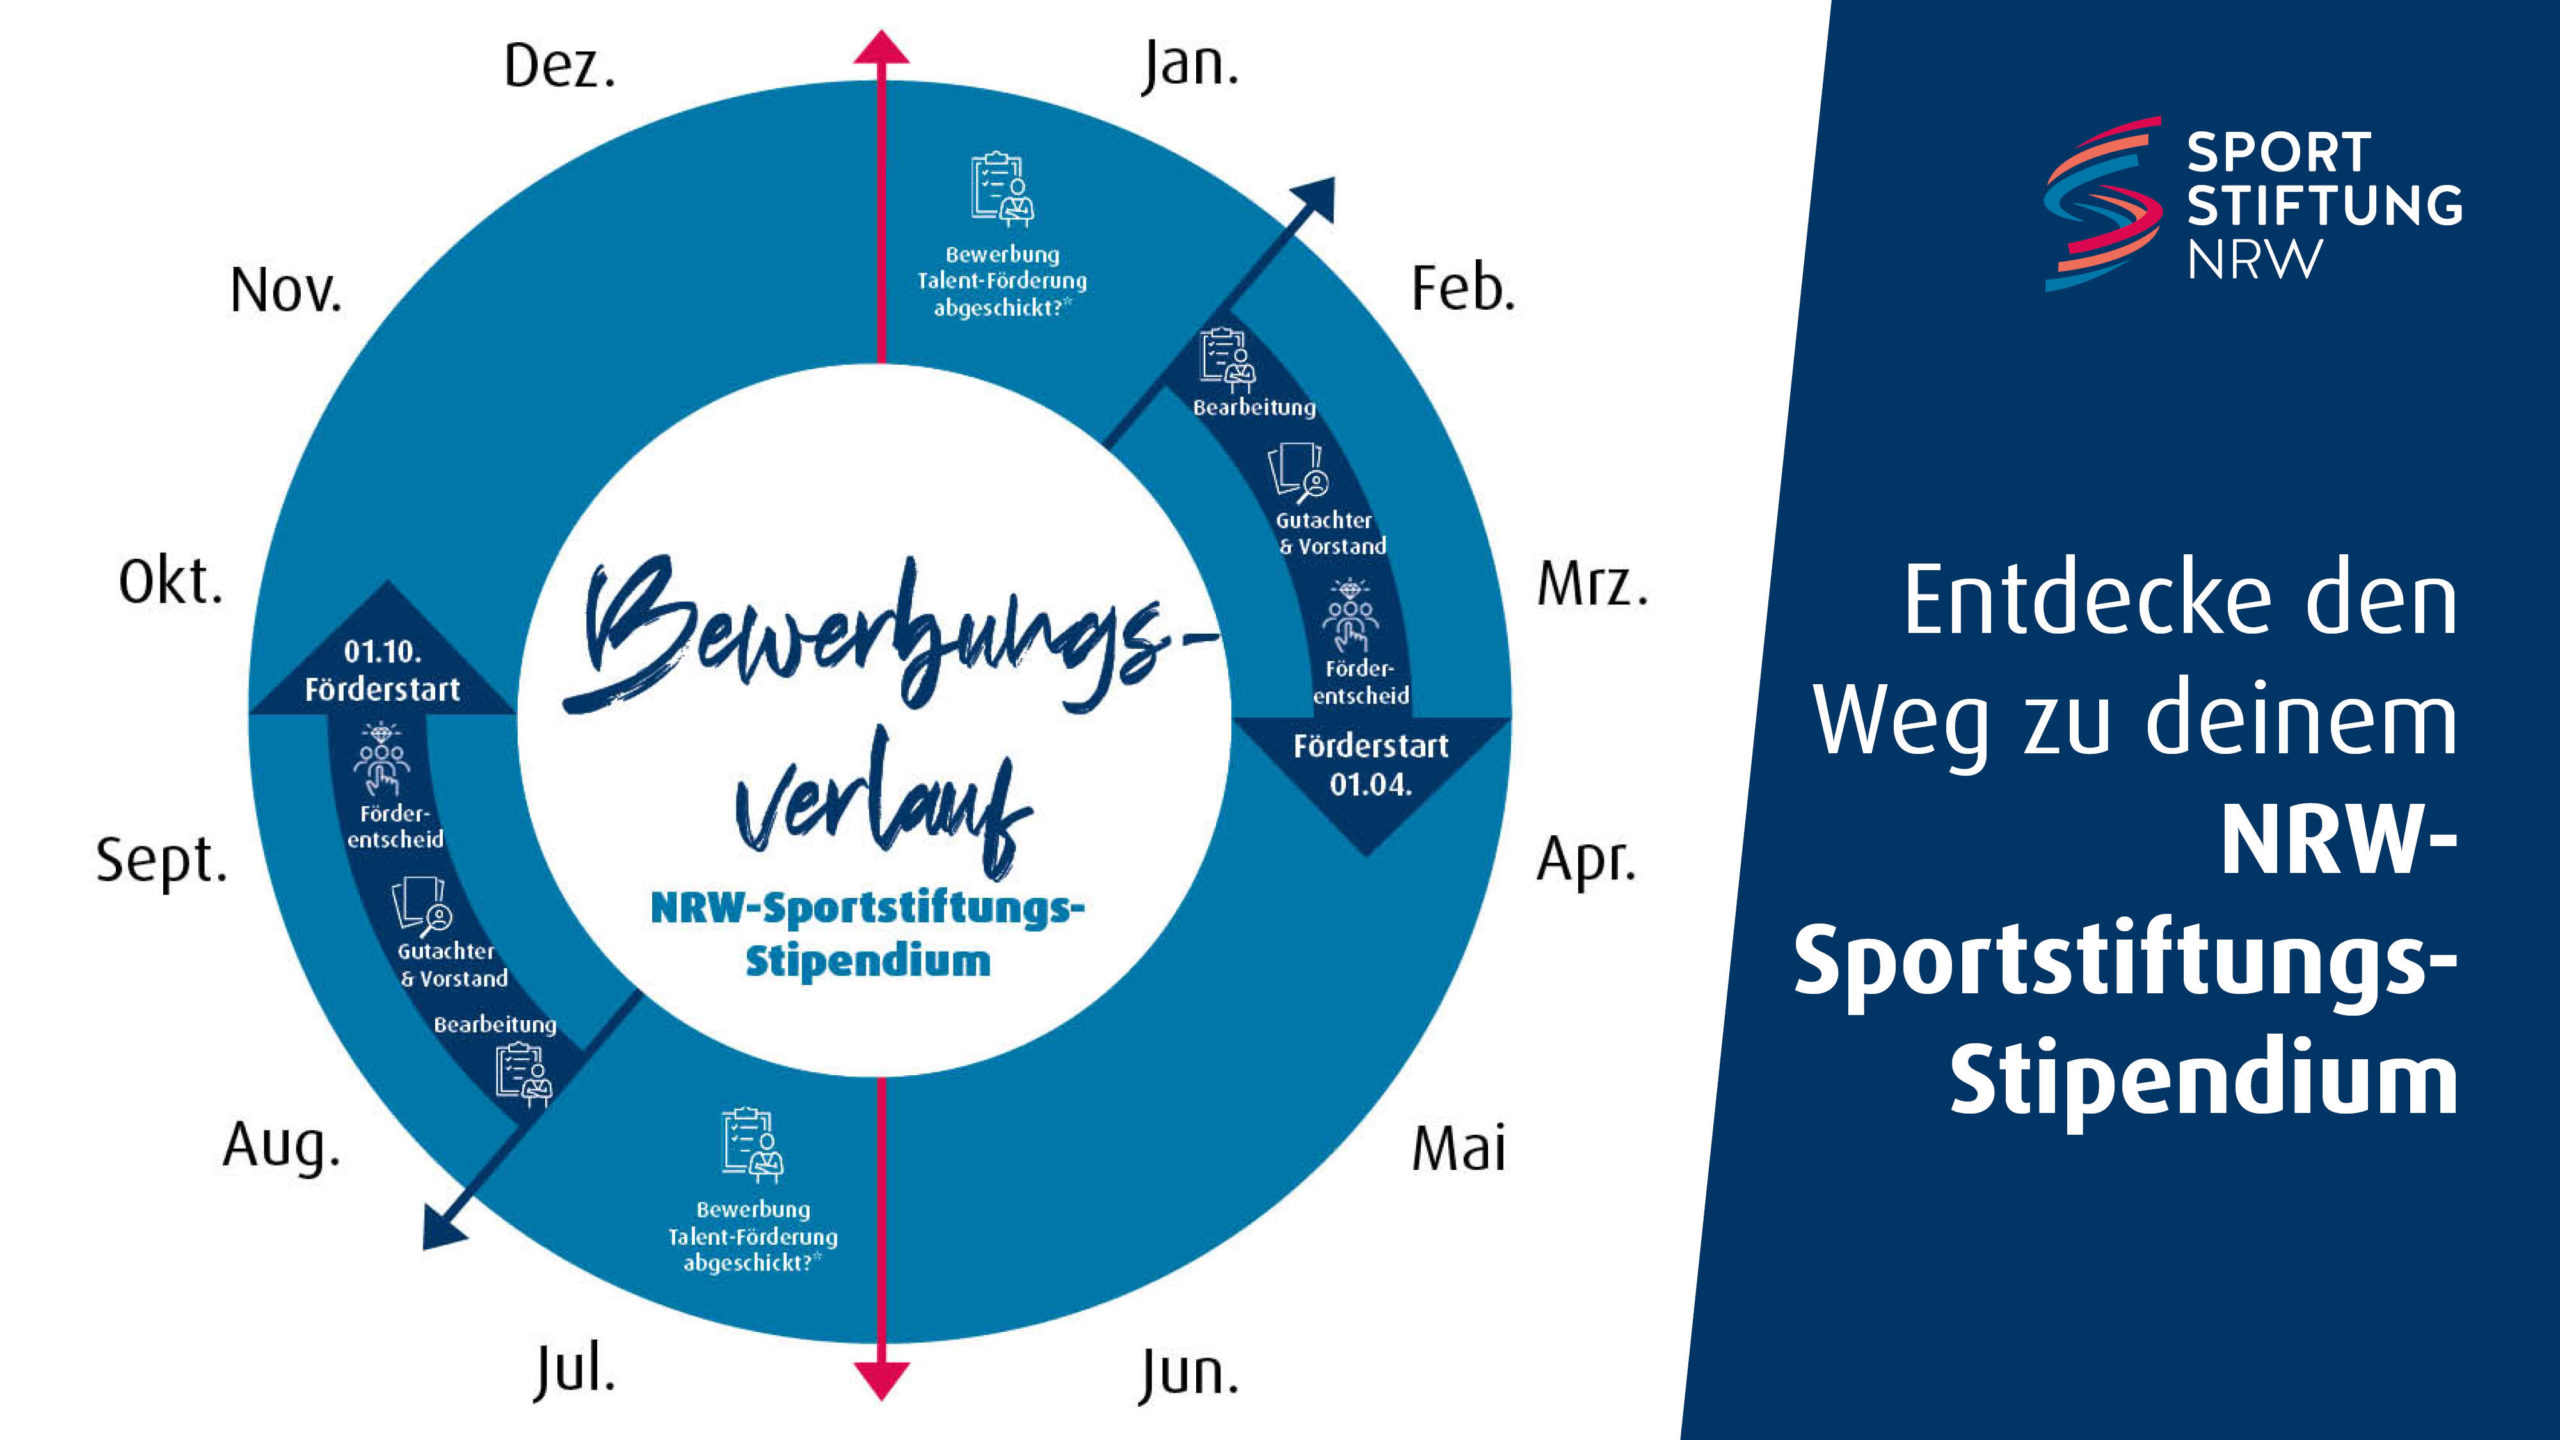 Entdecke den Weg zu deinem NRW-Sportstiftungs-Stipendium
